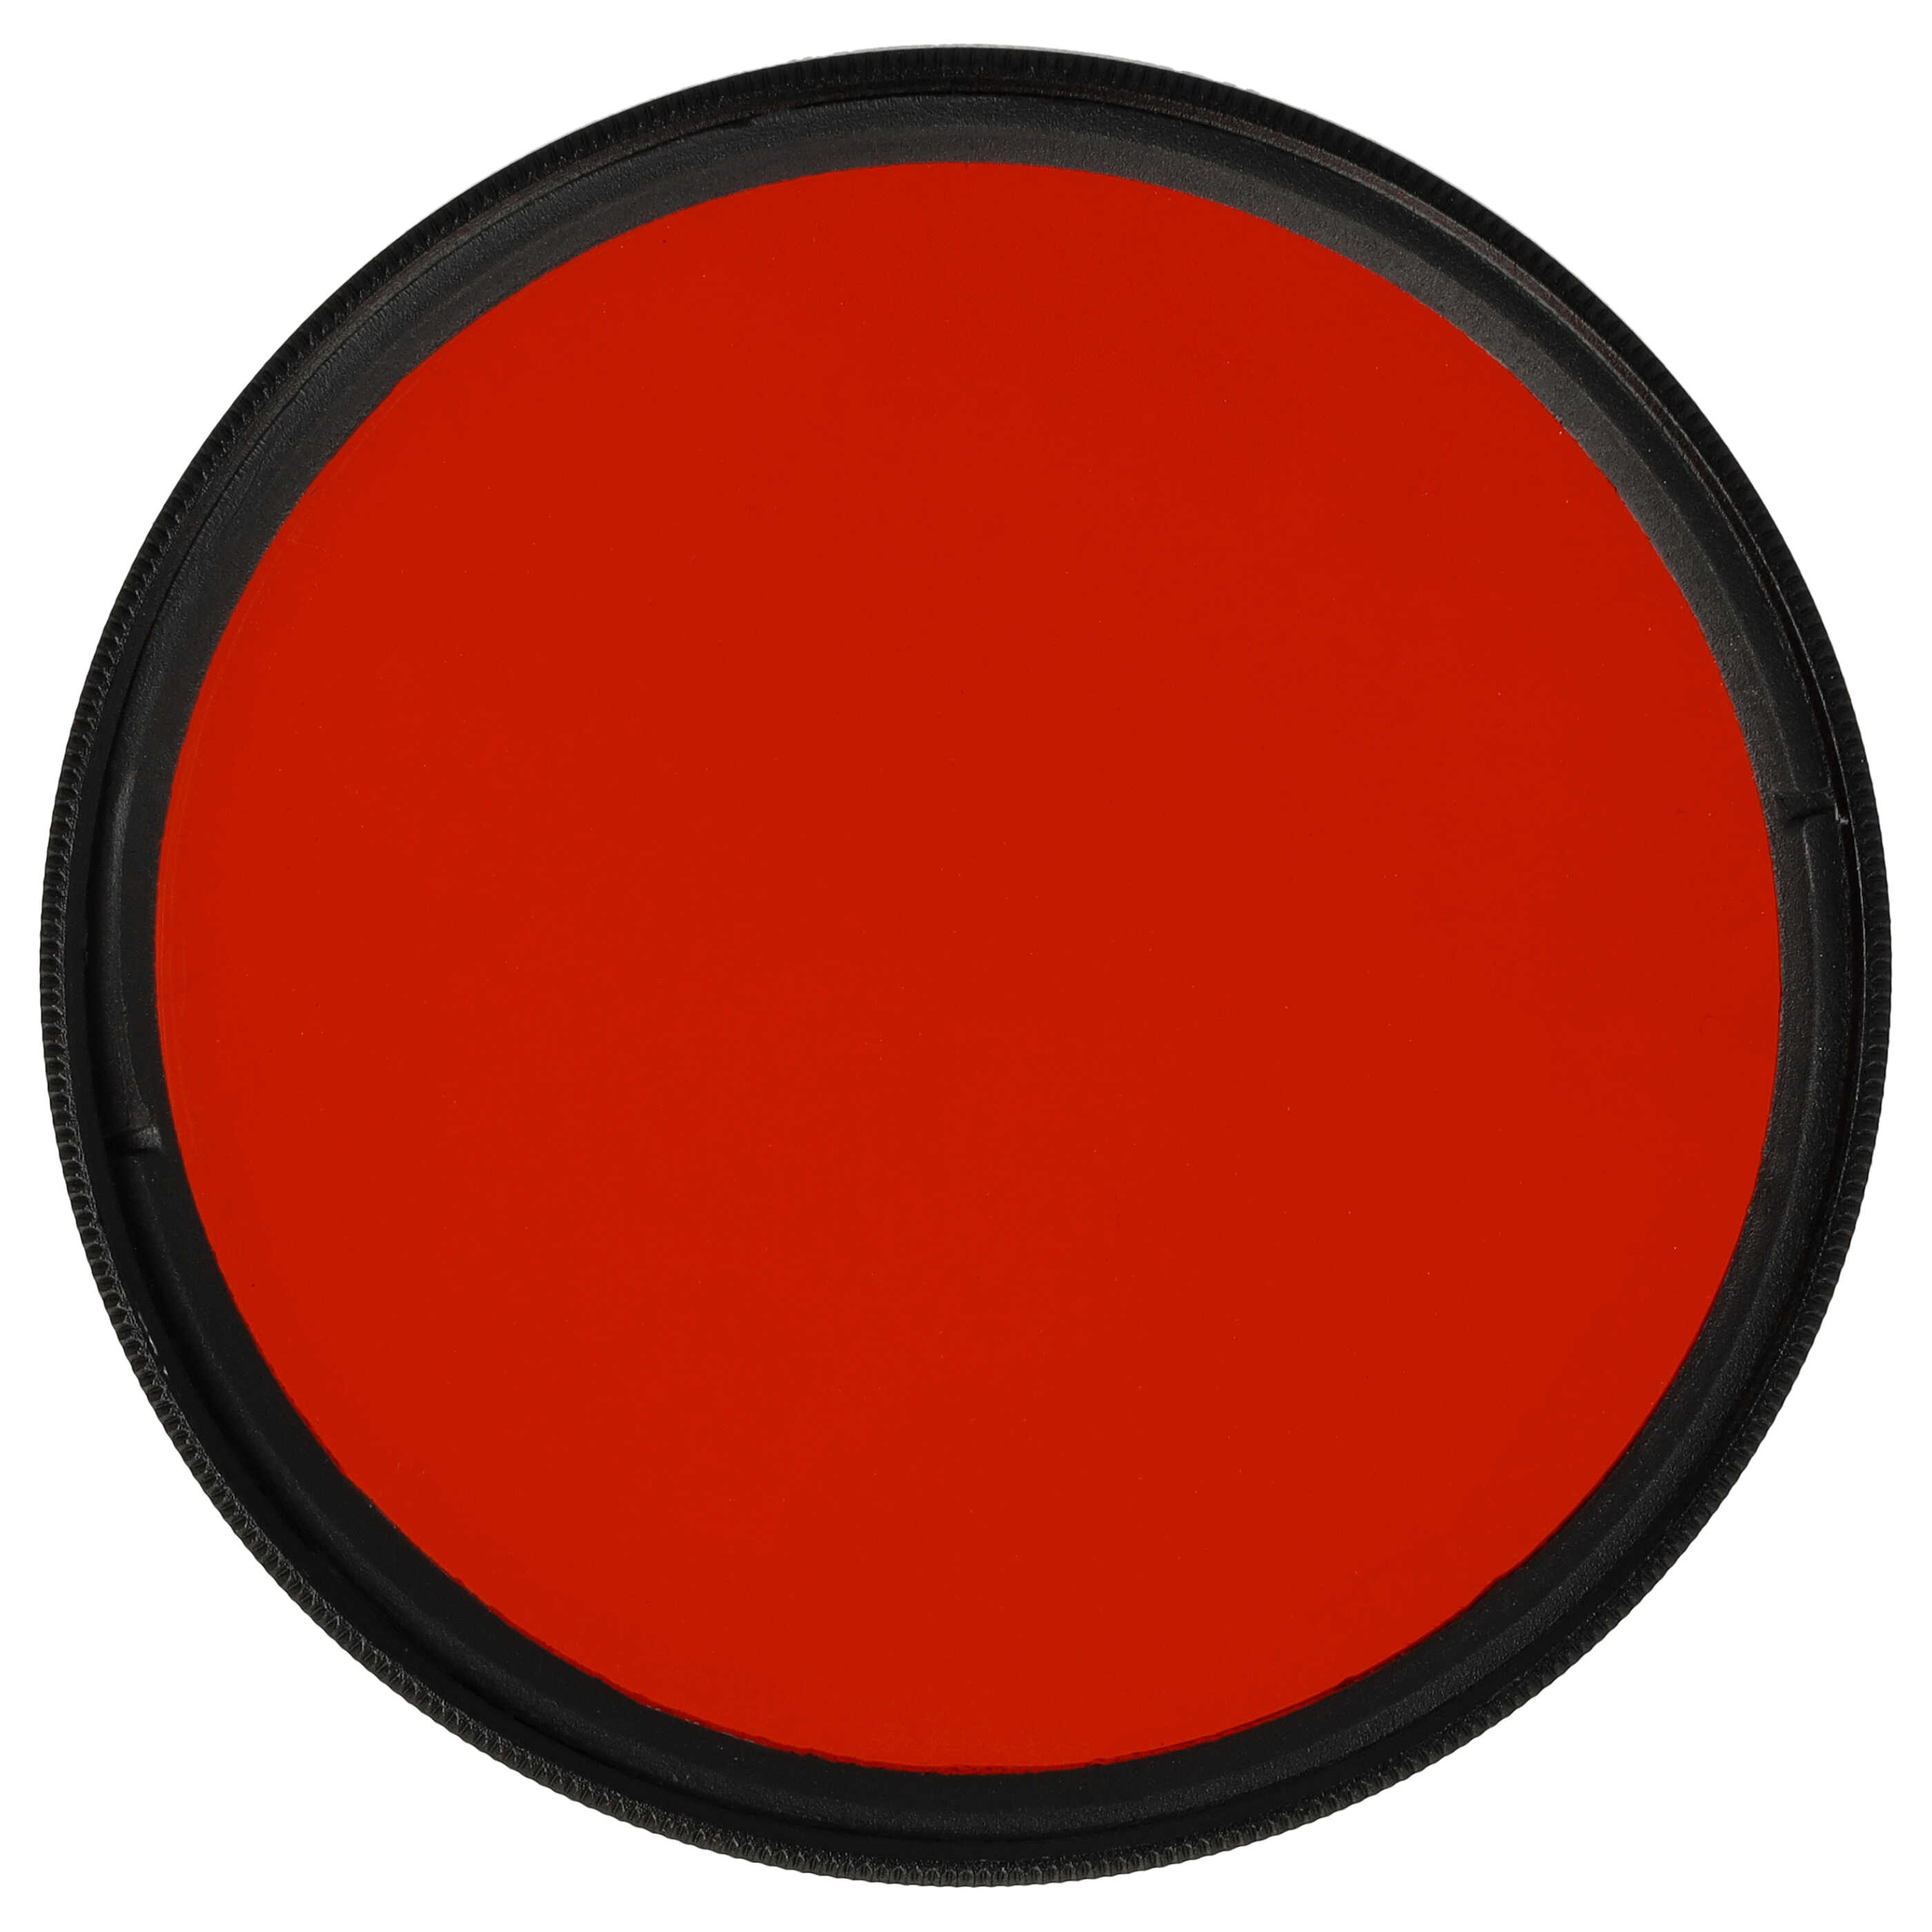 Filtre de couleur orange pour objectifs d'appareils photo de 62 mm - Filtre orange